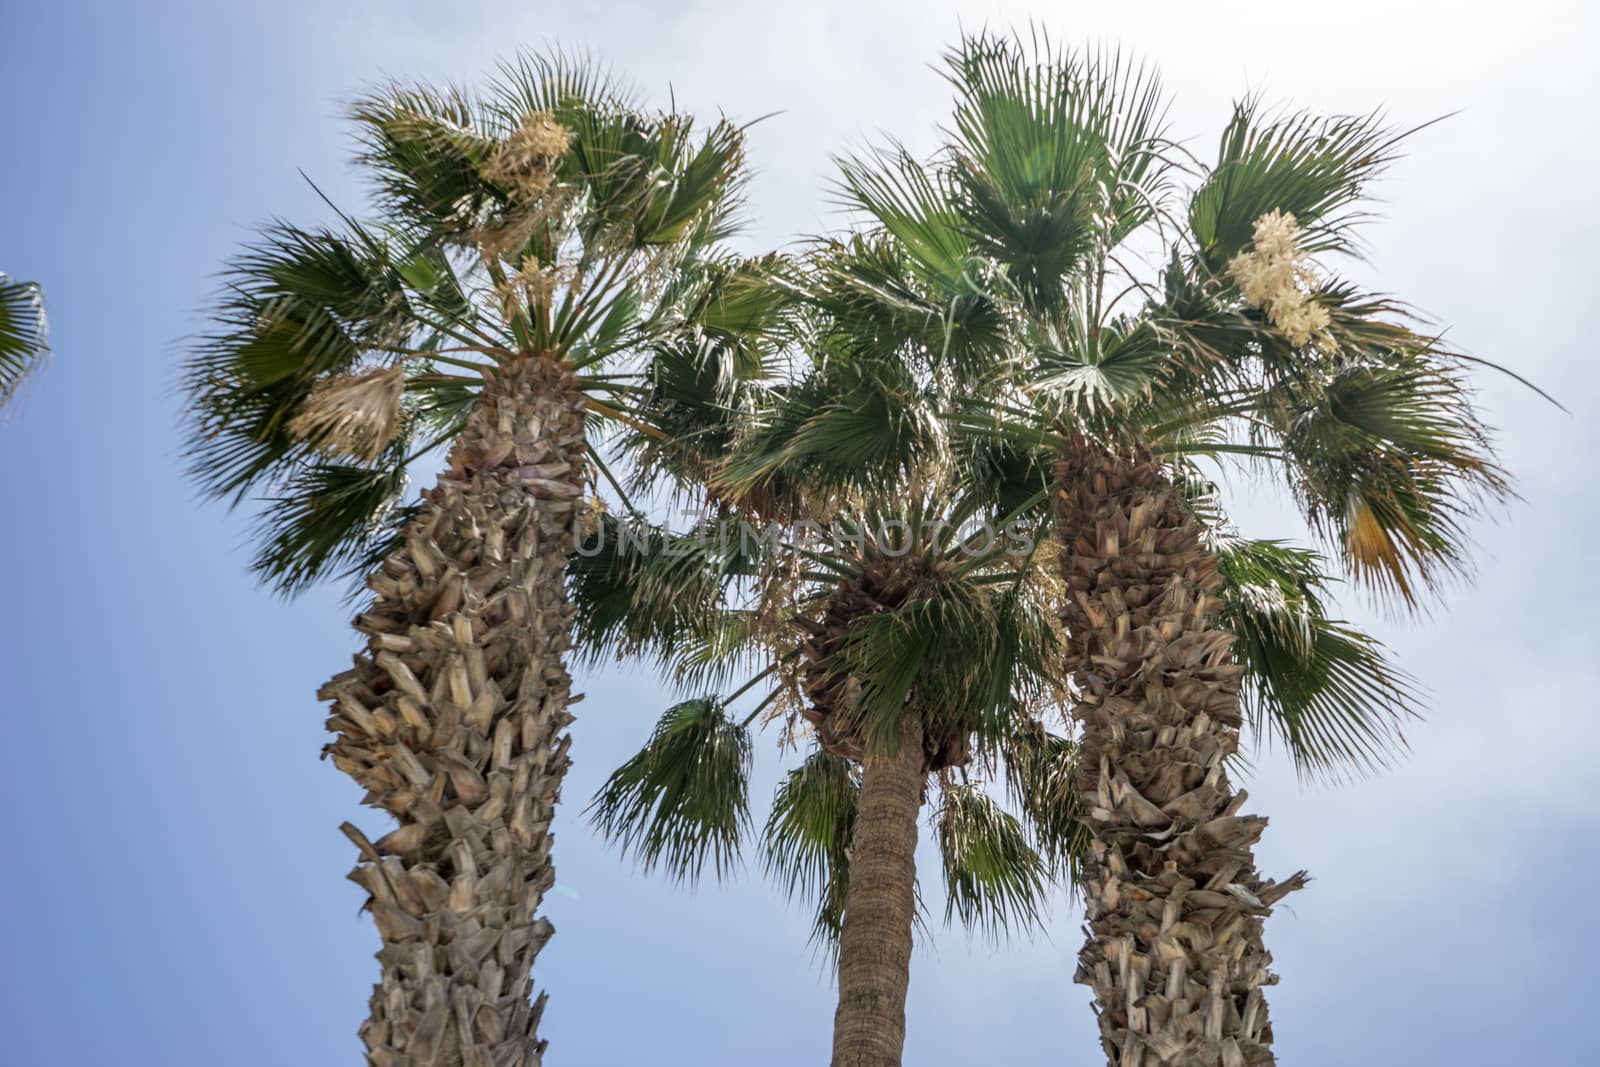 Tall palm trees along the Malagueta beach in Malaga, Spain, Euro by ramana16